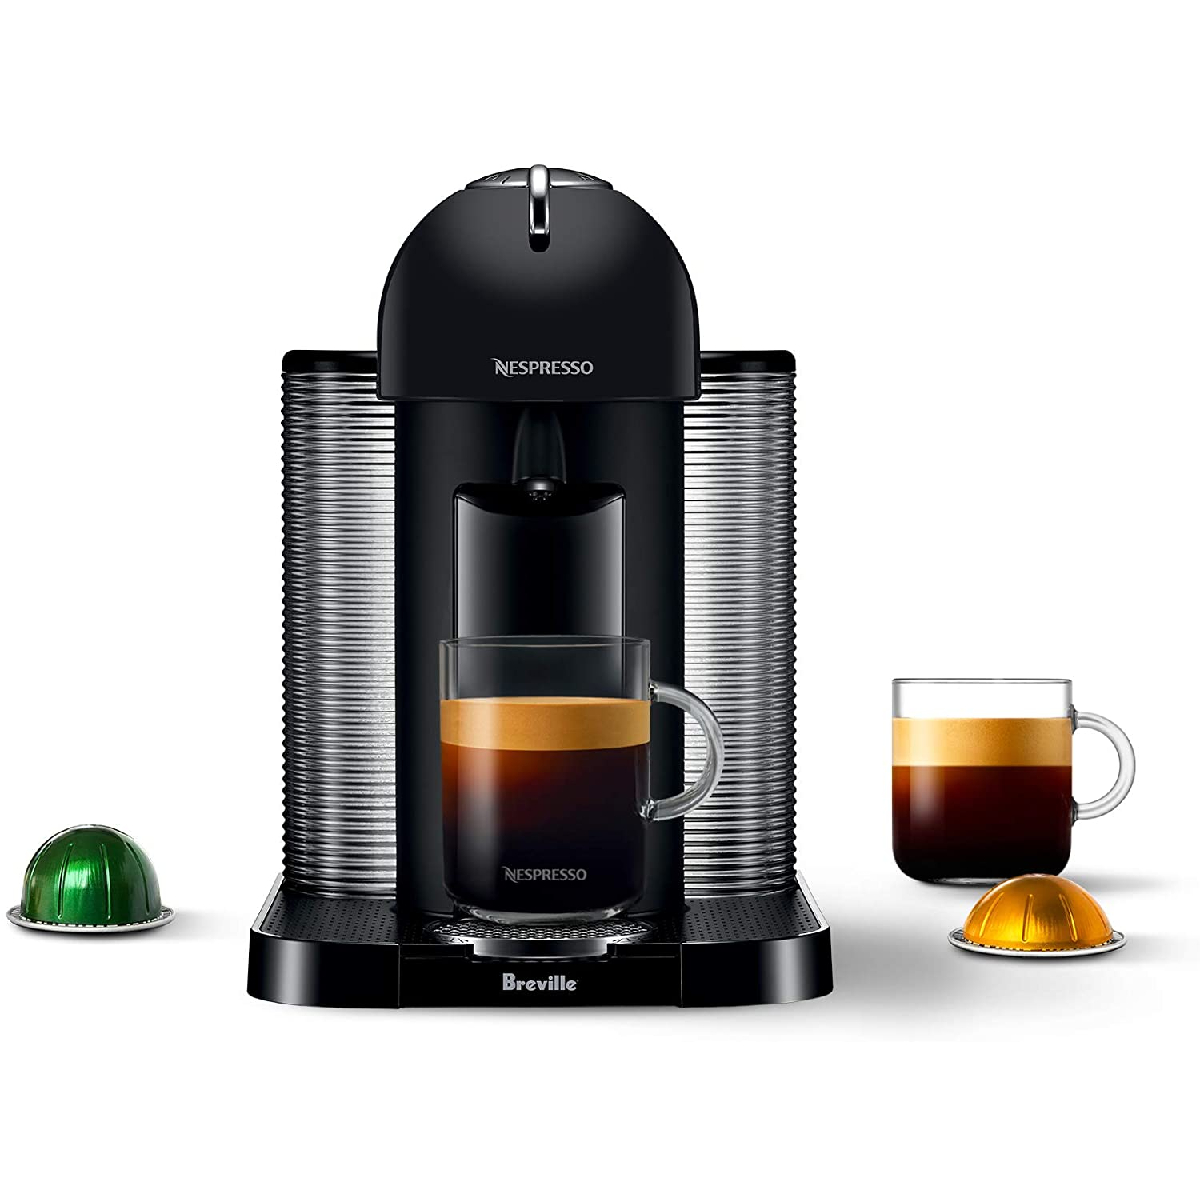 Breville-Nespresso Coffee and Espresso Machine (30% off)